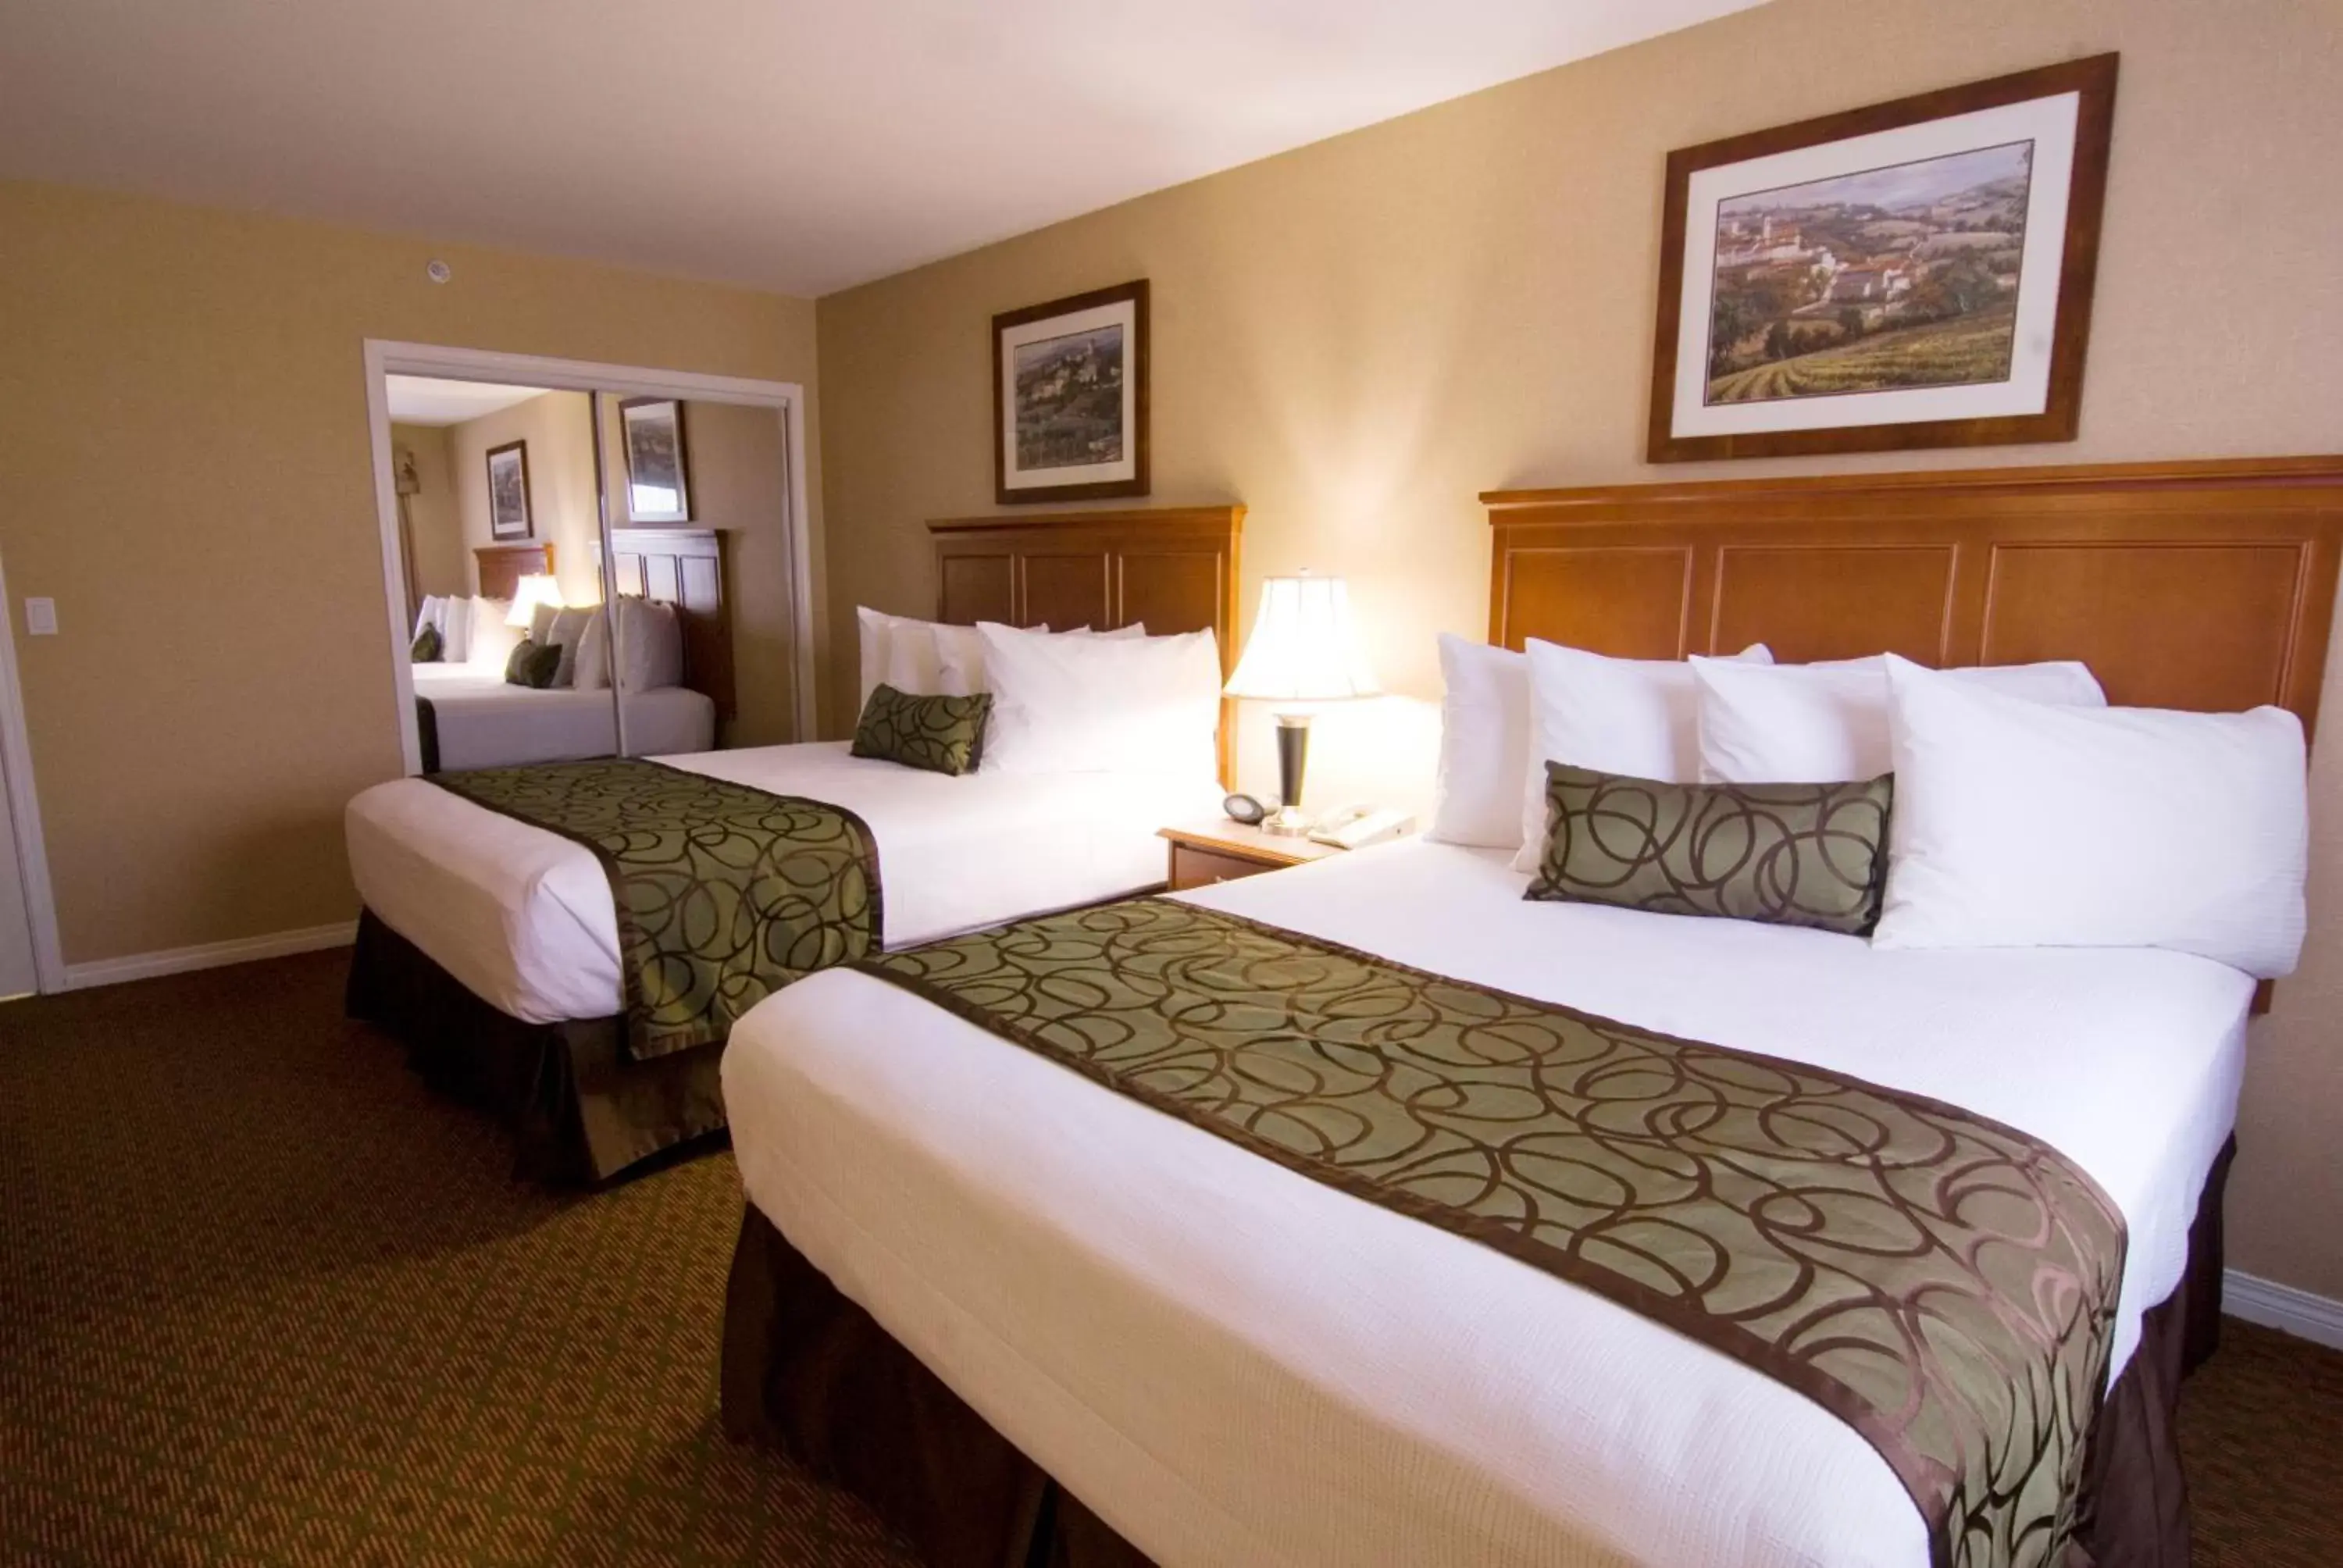 Bedroom, Bed in Best Western Plus Osoyoos Hotel & Suites